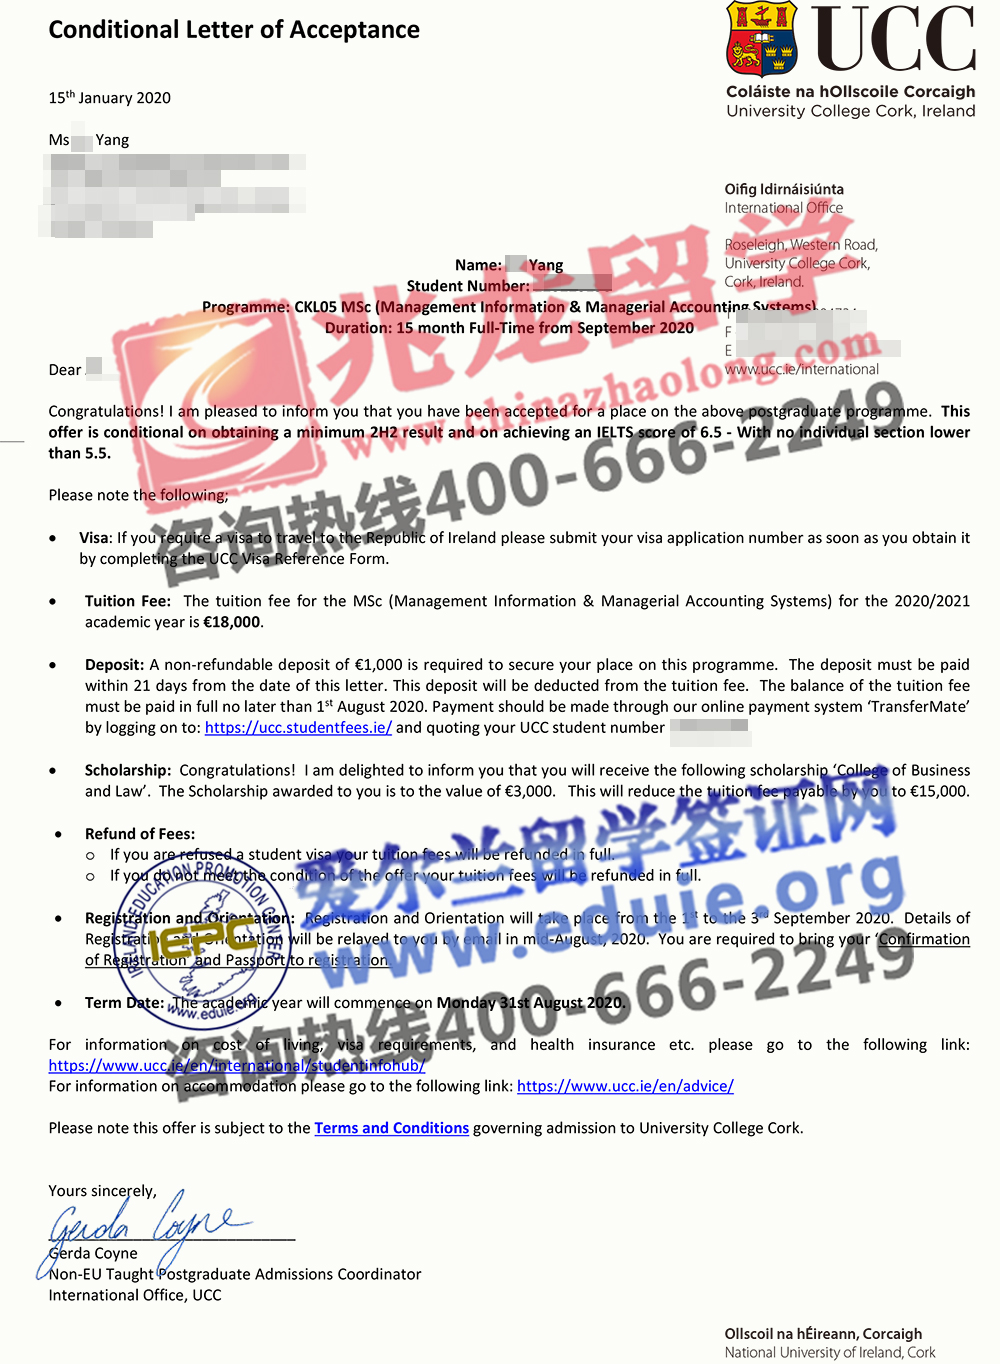 杨jin-UCC-管理信息与管理会计系统-硕士-有条件offer-北京兆龙留学.jpg